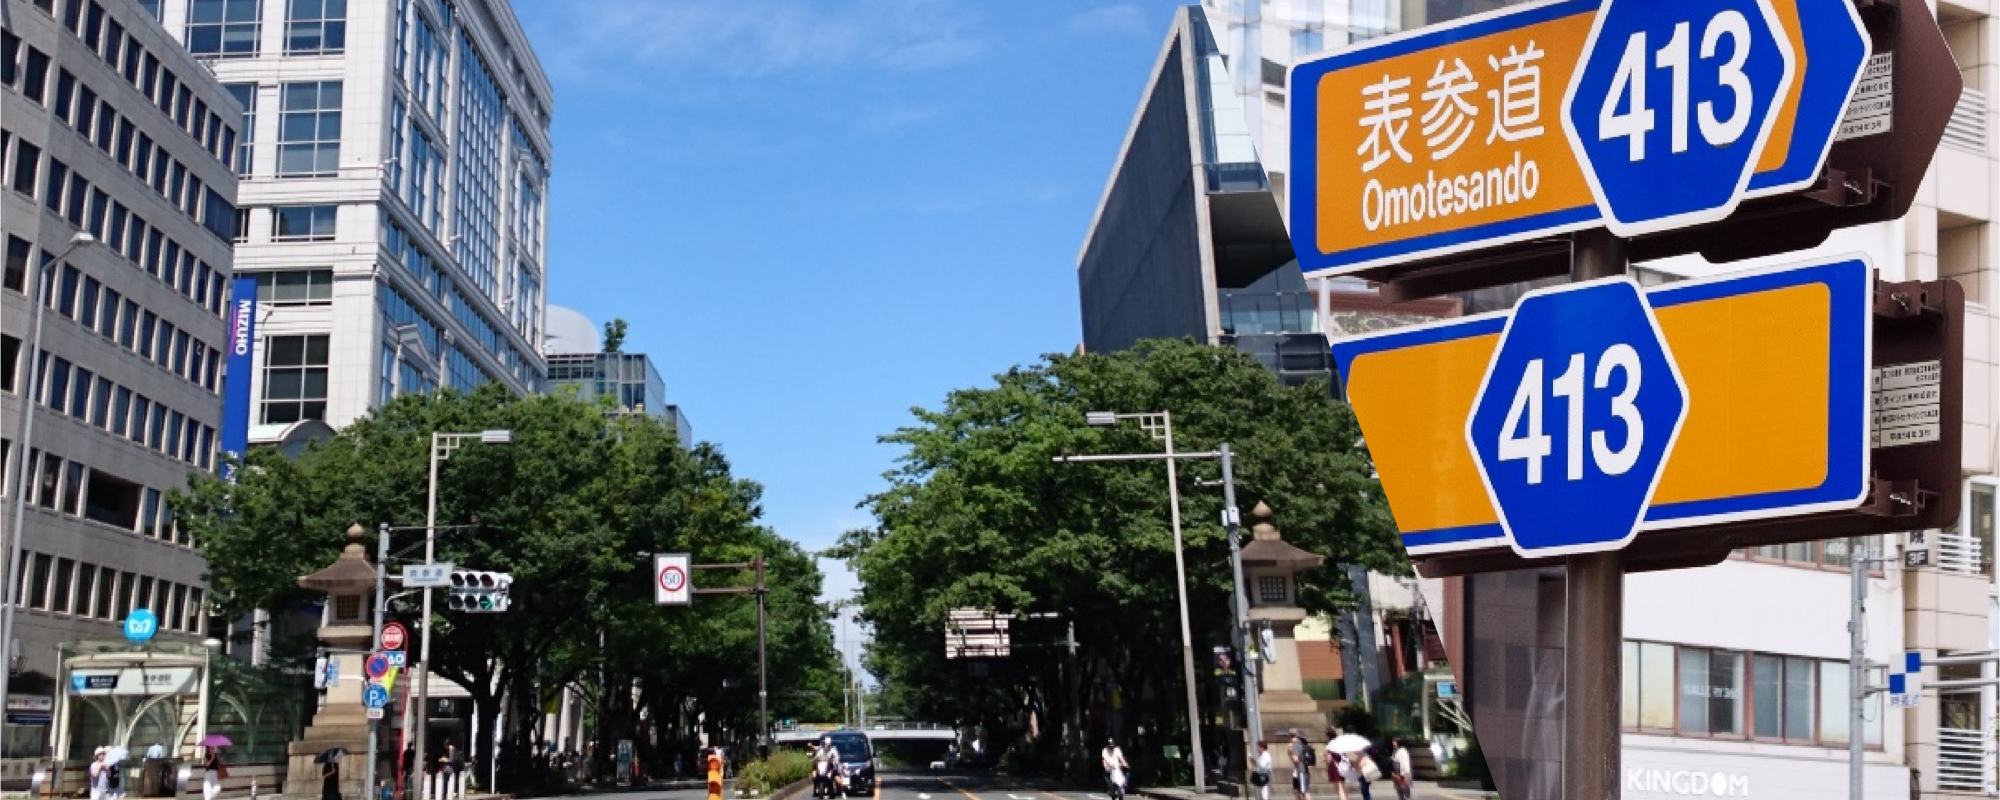 <a class='campaign-banner' href='https://beaura.jp/campaign_list/'><img
src='https://beaura.jp/wp-content/uploads/2022/11/beaura_bn_20221101-1-1.png' alt='キャンペーンバナー' /></a>